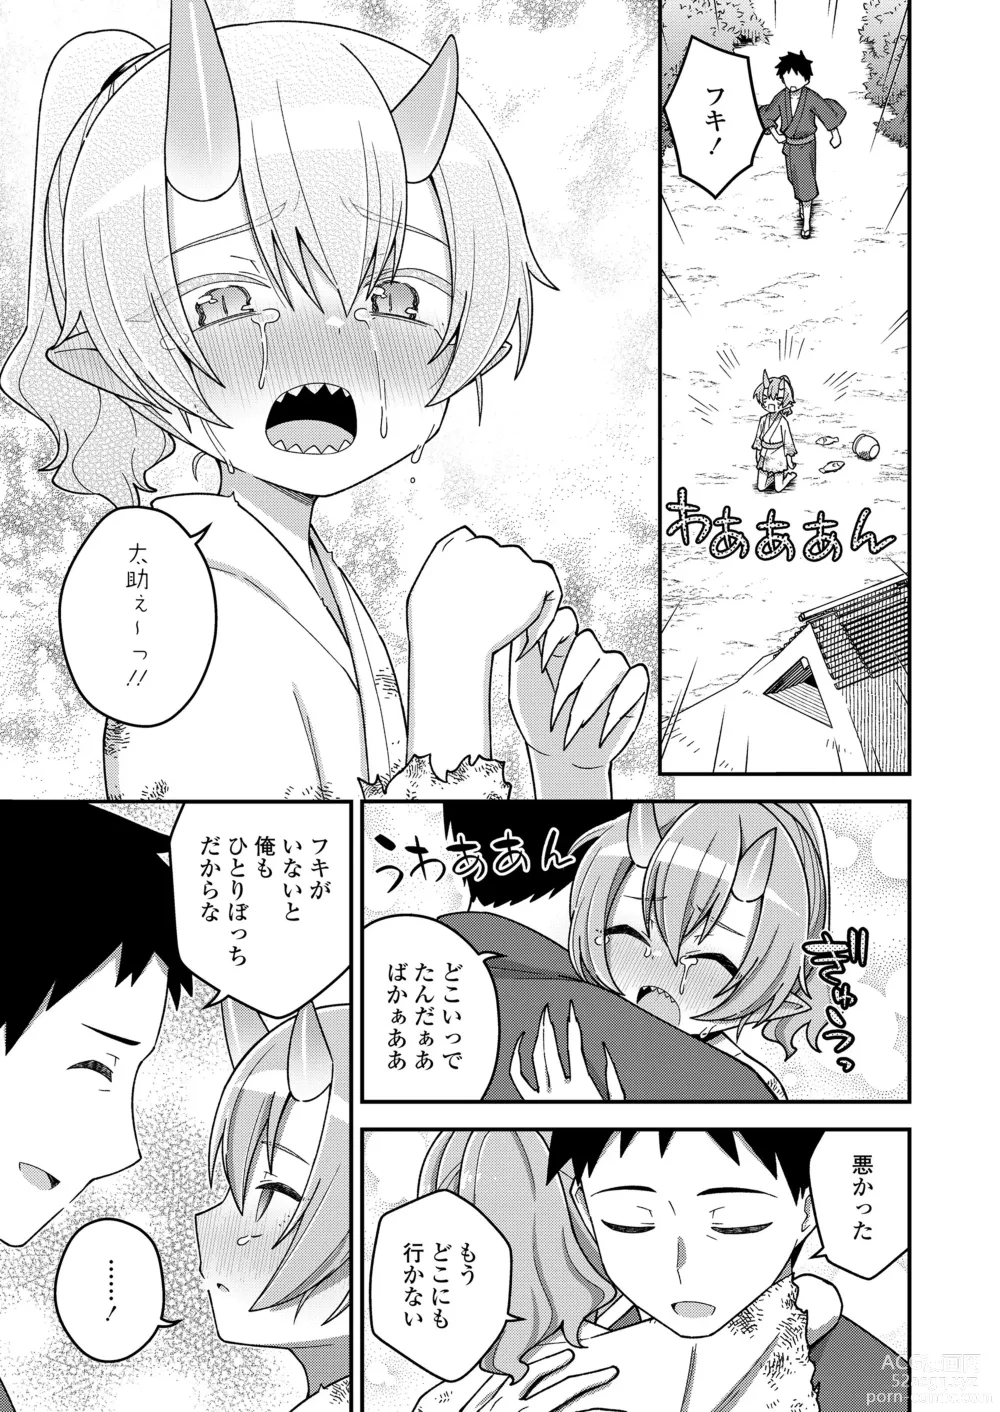 Page 163 of manga Towako Oboro Emaki 14